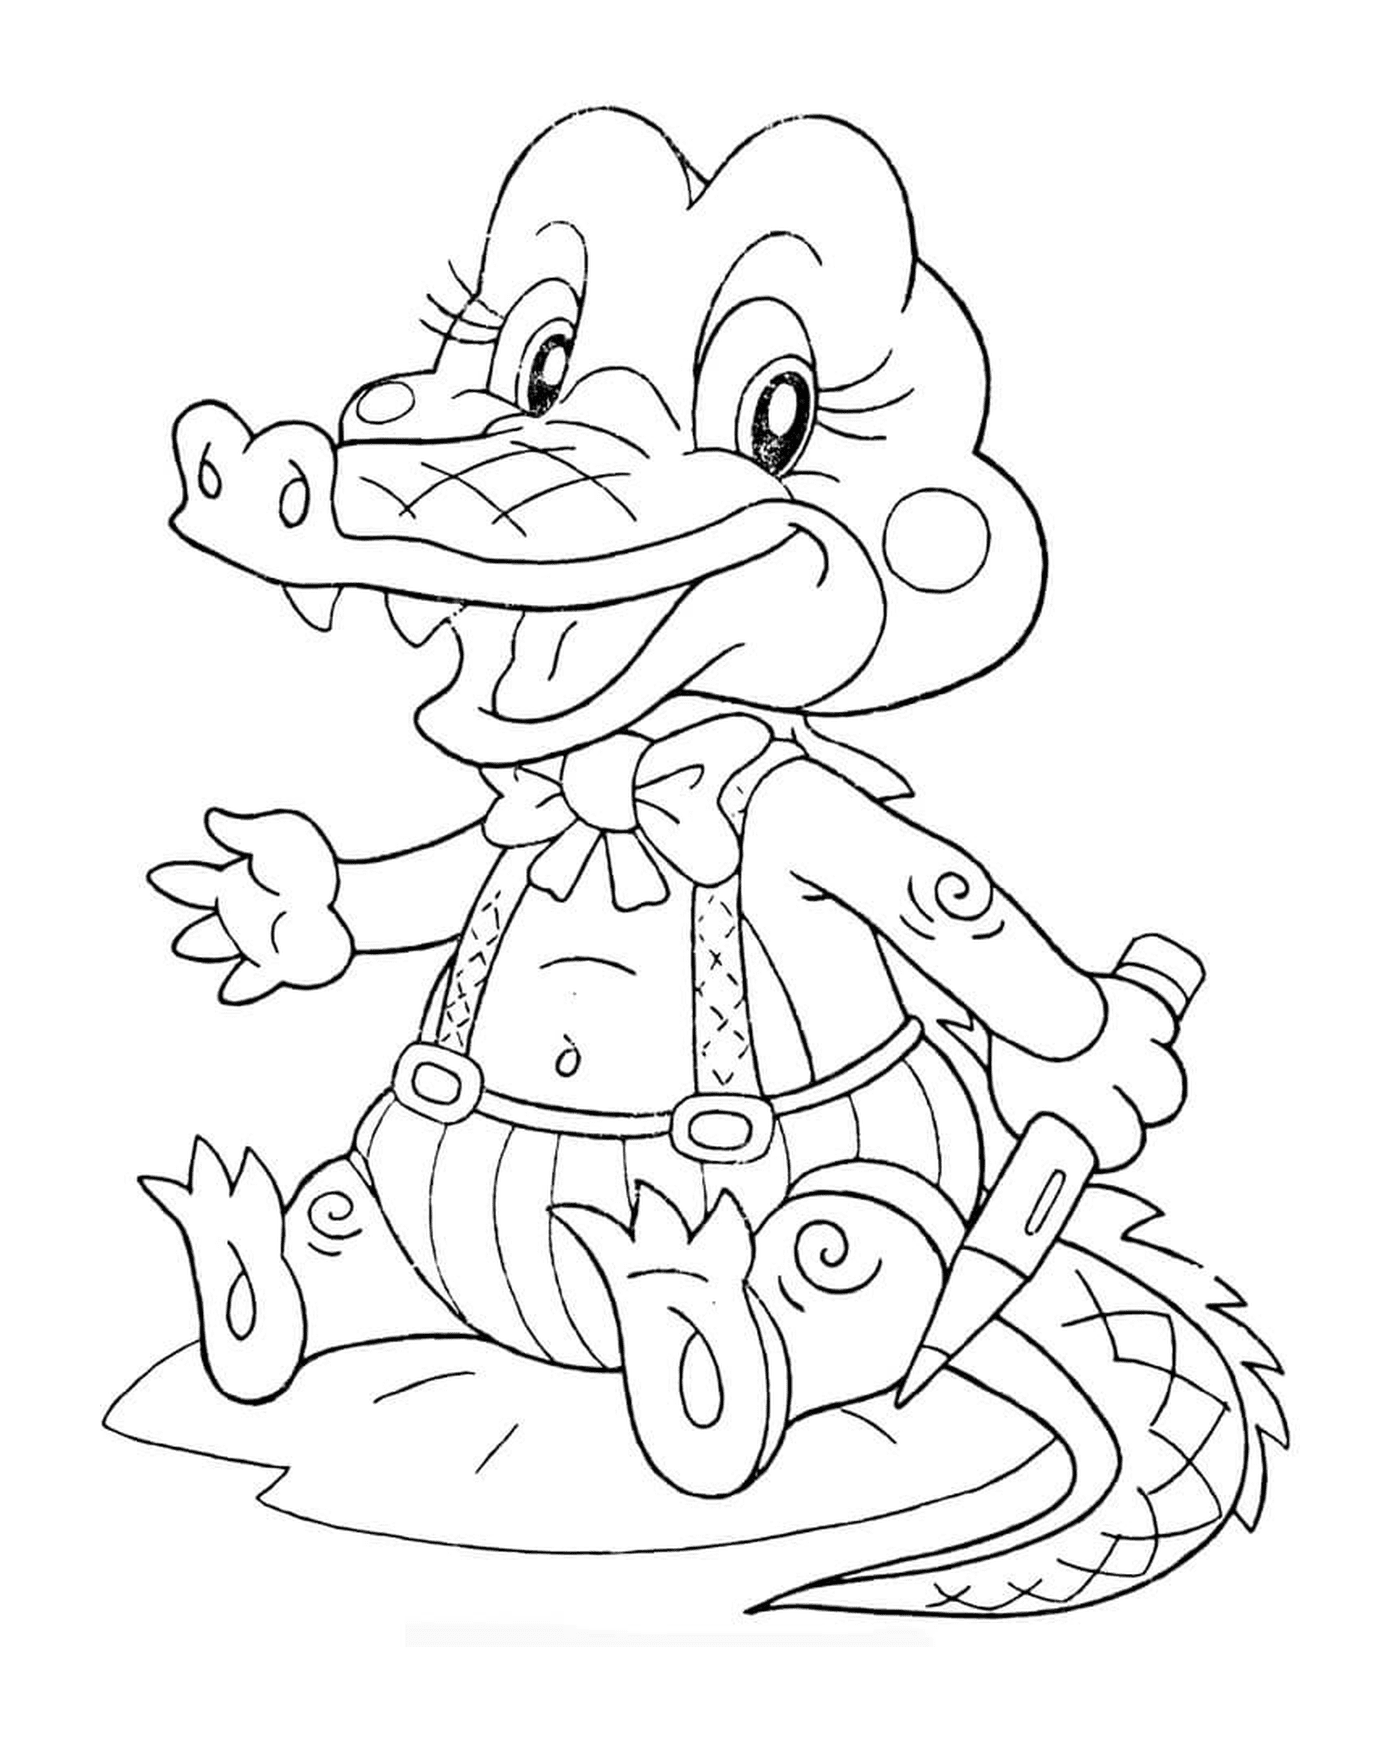  Ein Krokodilbaby mit Buntstiften 